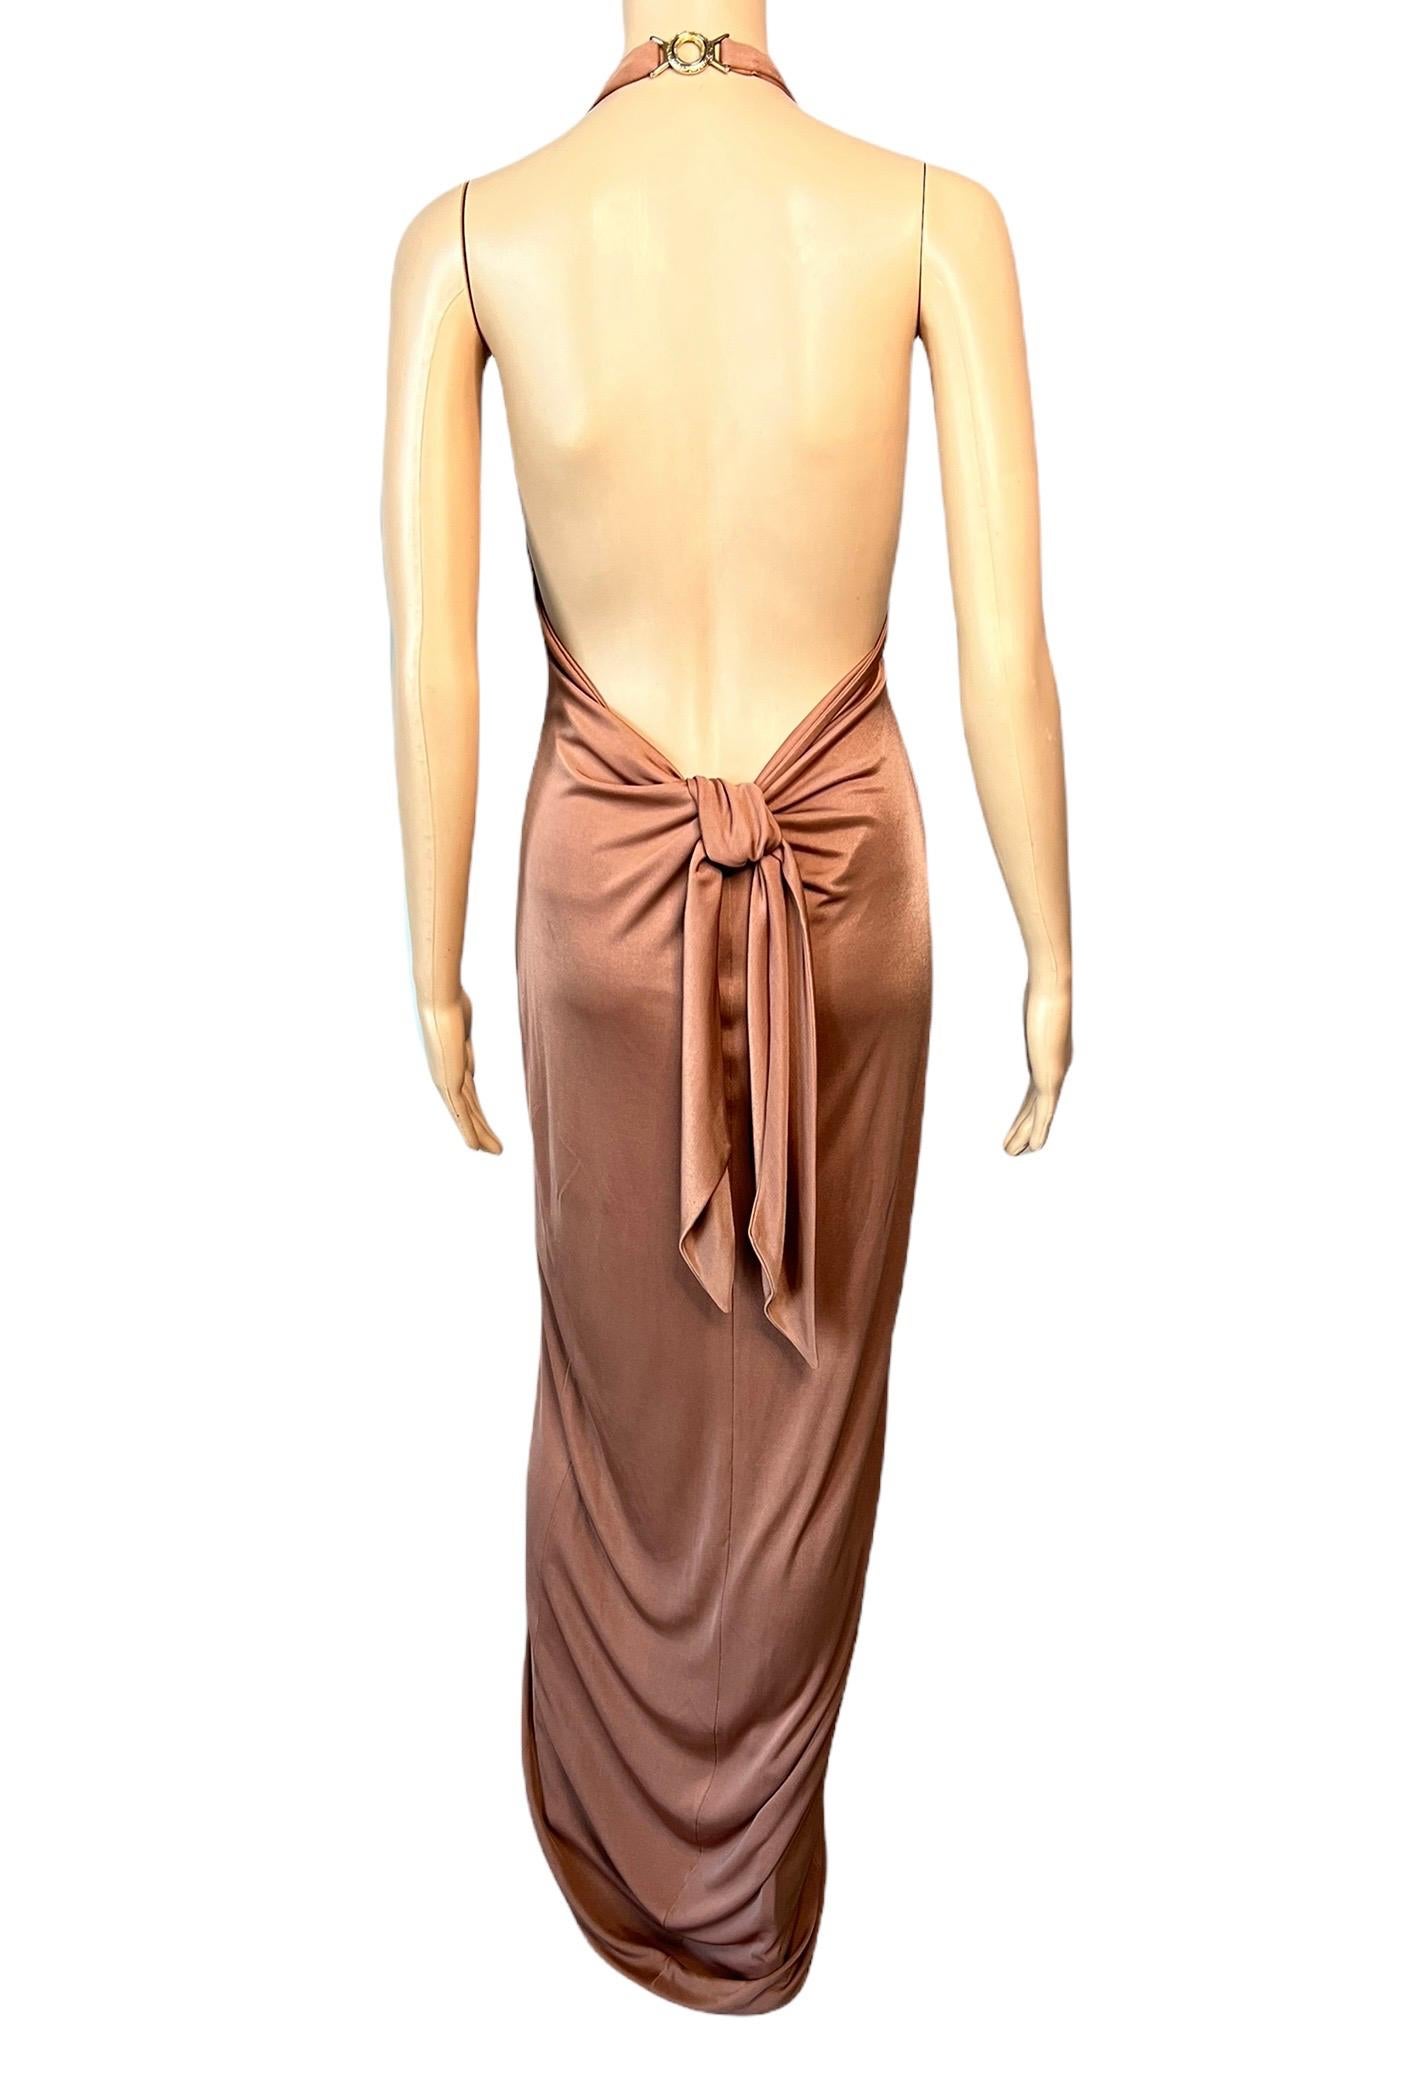 Versace S/S 2005 Laufsteg Tief ausgeschnittenes, hochgeschlossenes, gerafftes Abendkleid mit offenem Rücken (Braun)